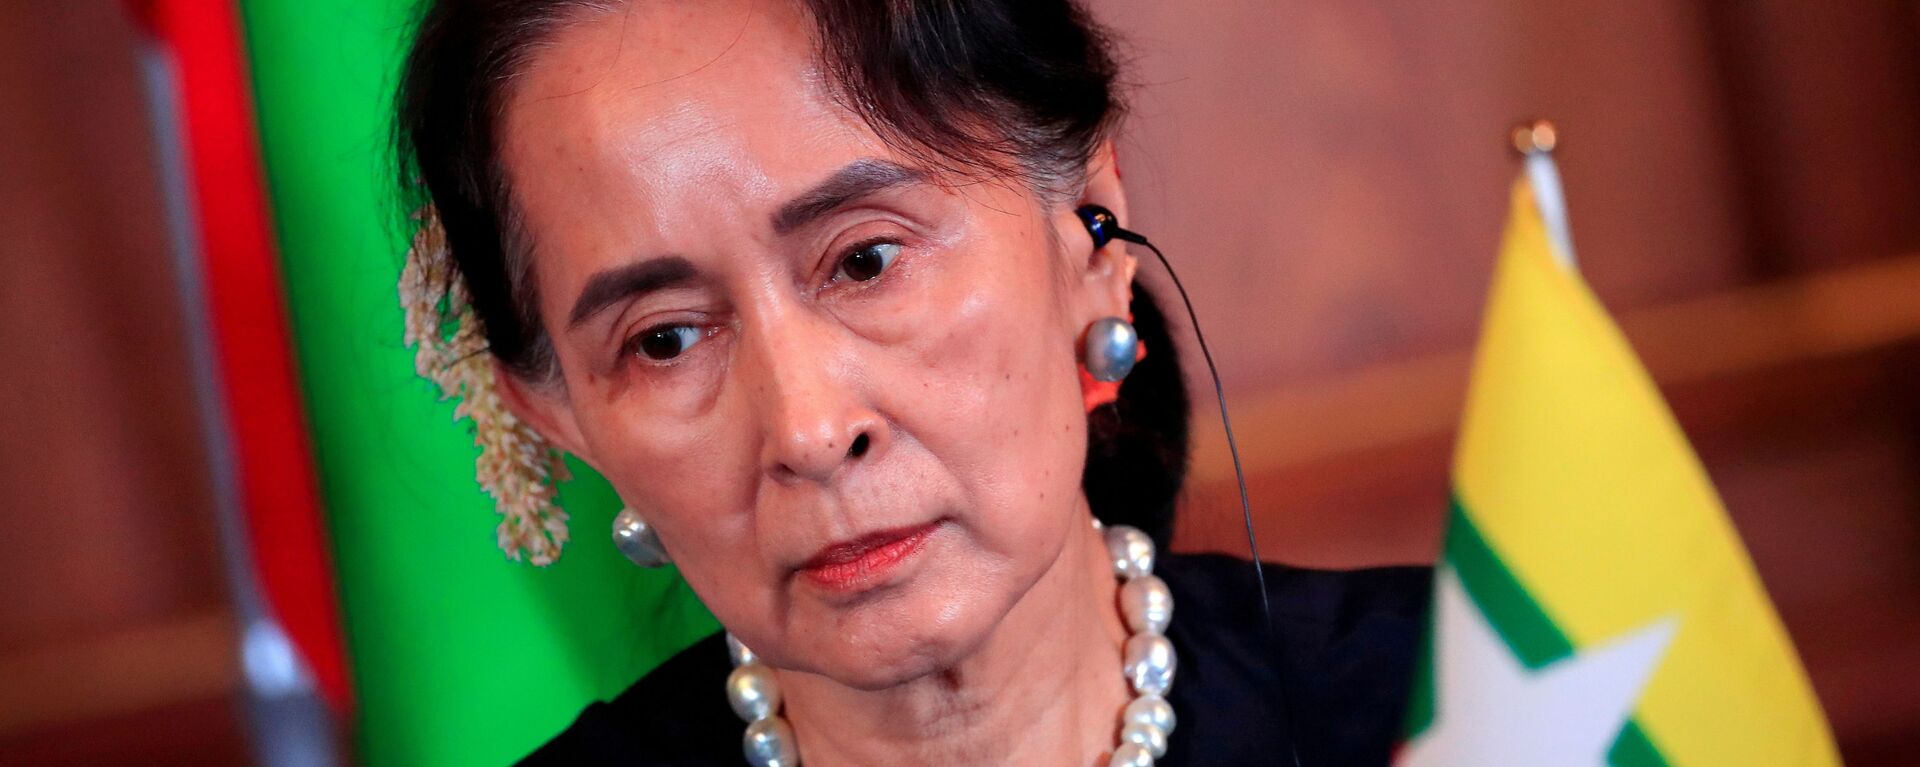 Cựu Cố vấn Nhà nước Myanmar Aung San Suu Kyi. - Sputnik Việt Nam, 1920, 24.05.2021